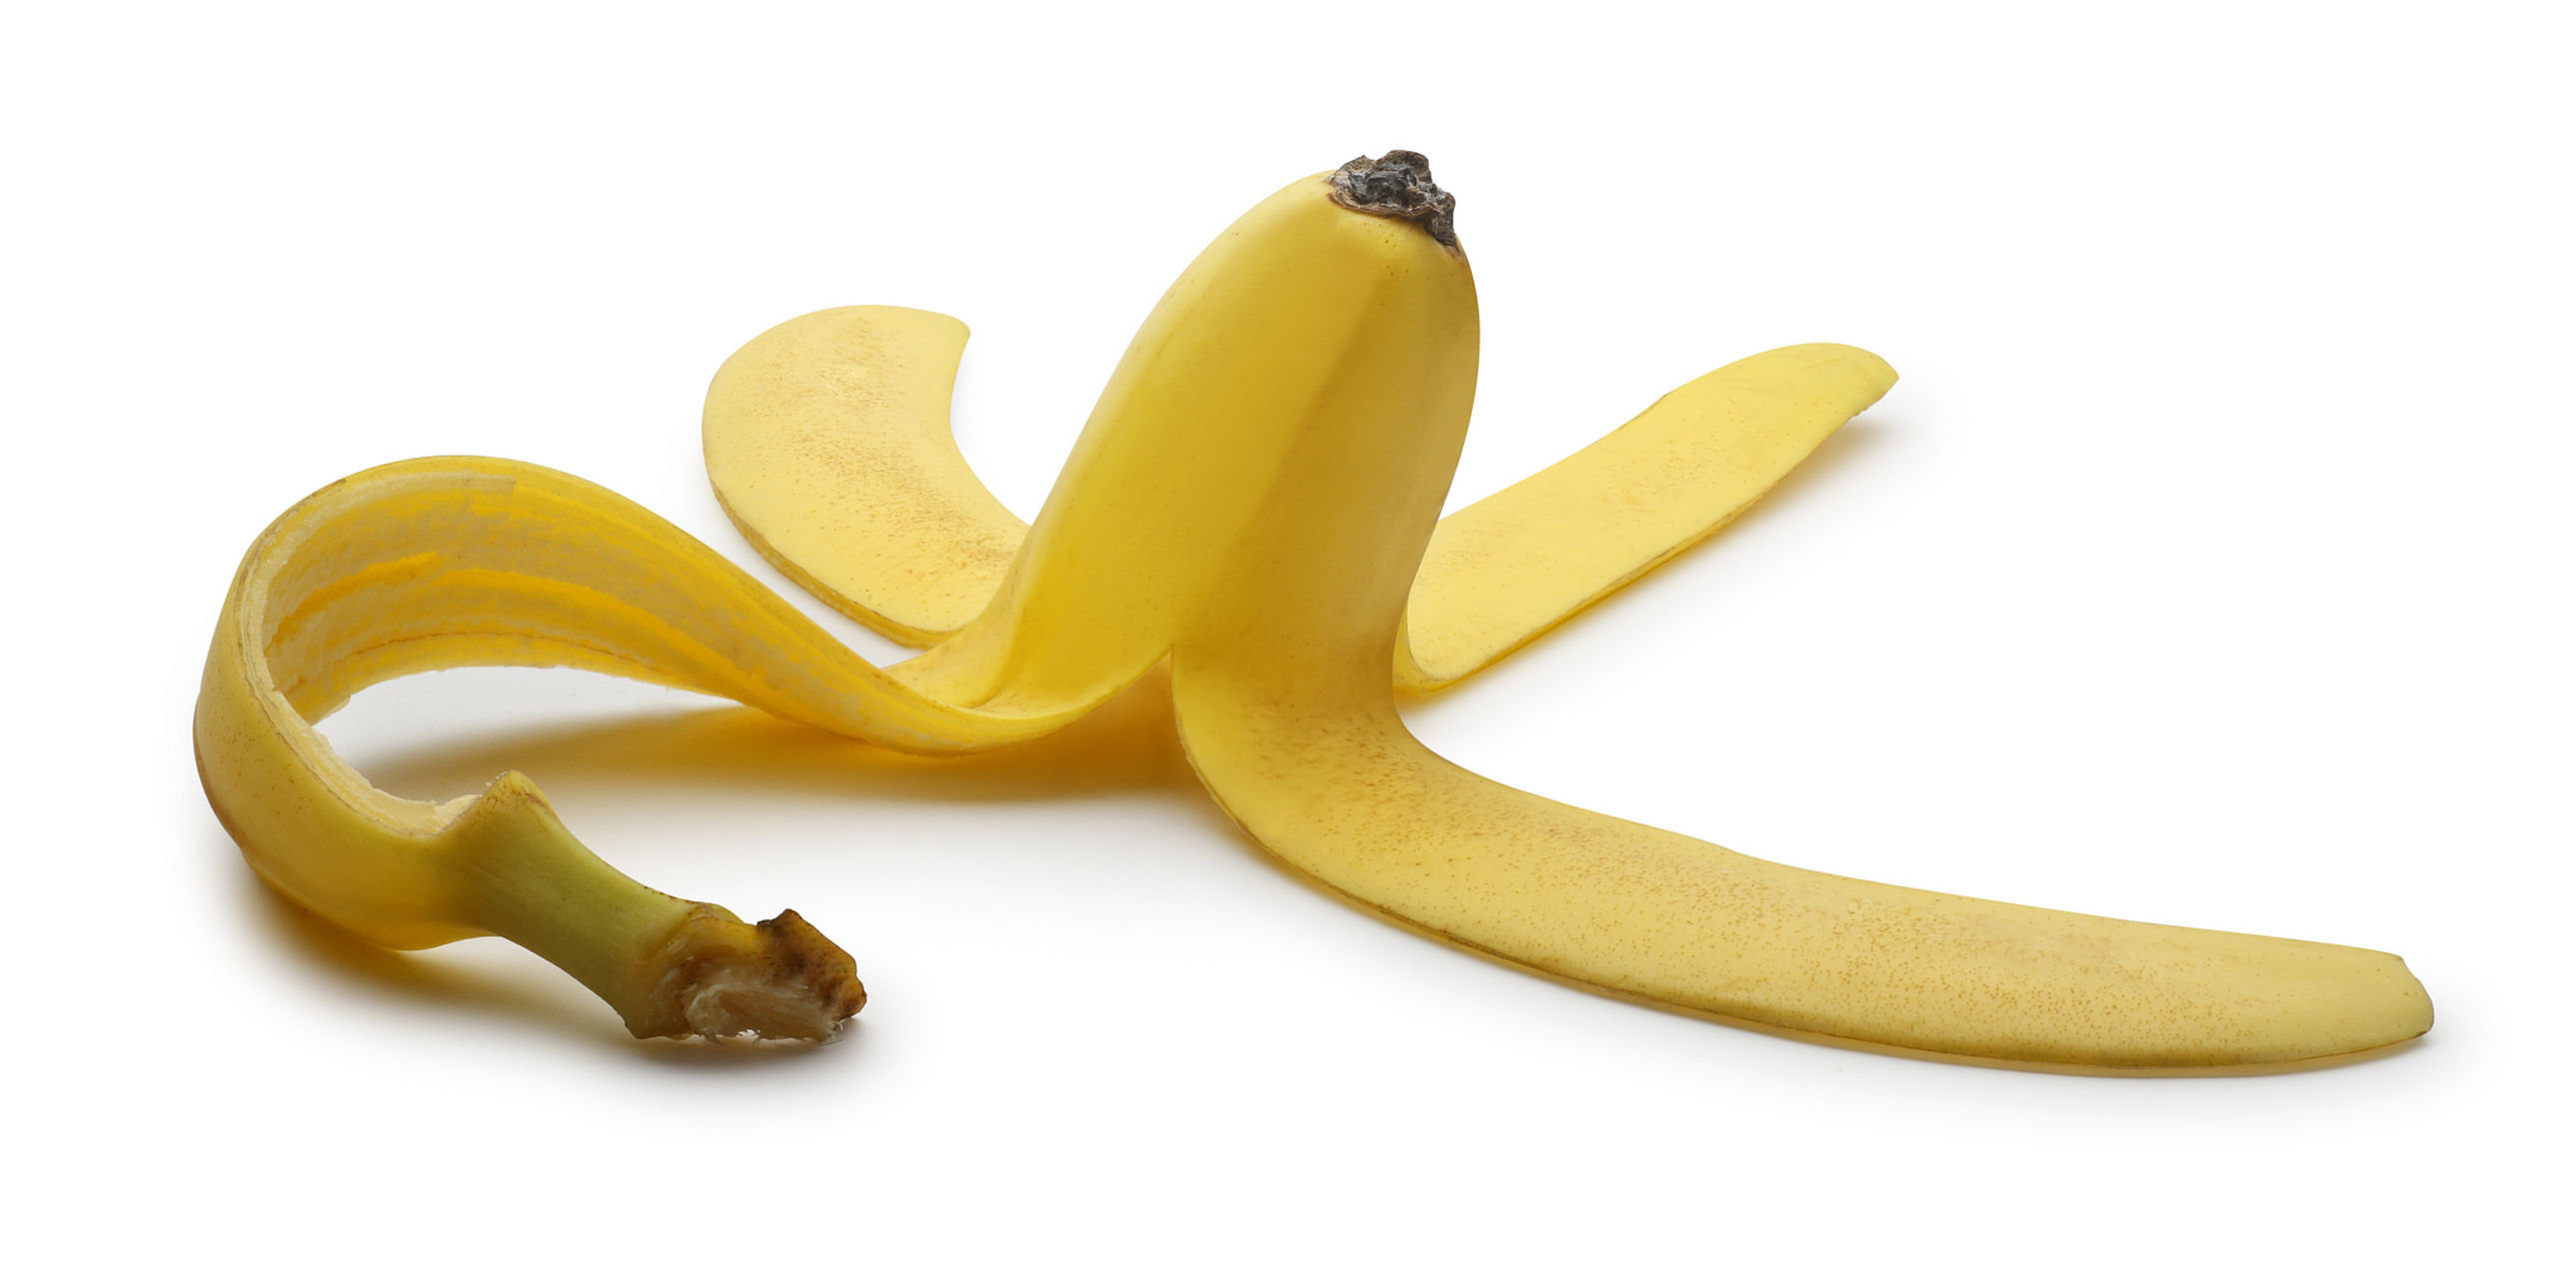 香蕉皮是环保的天然肥料,富含钾和其他有益营养素